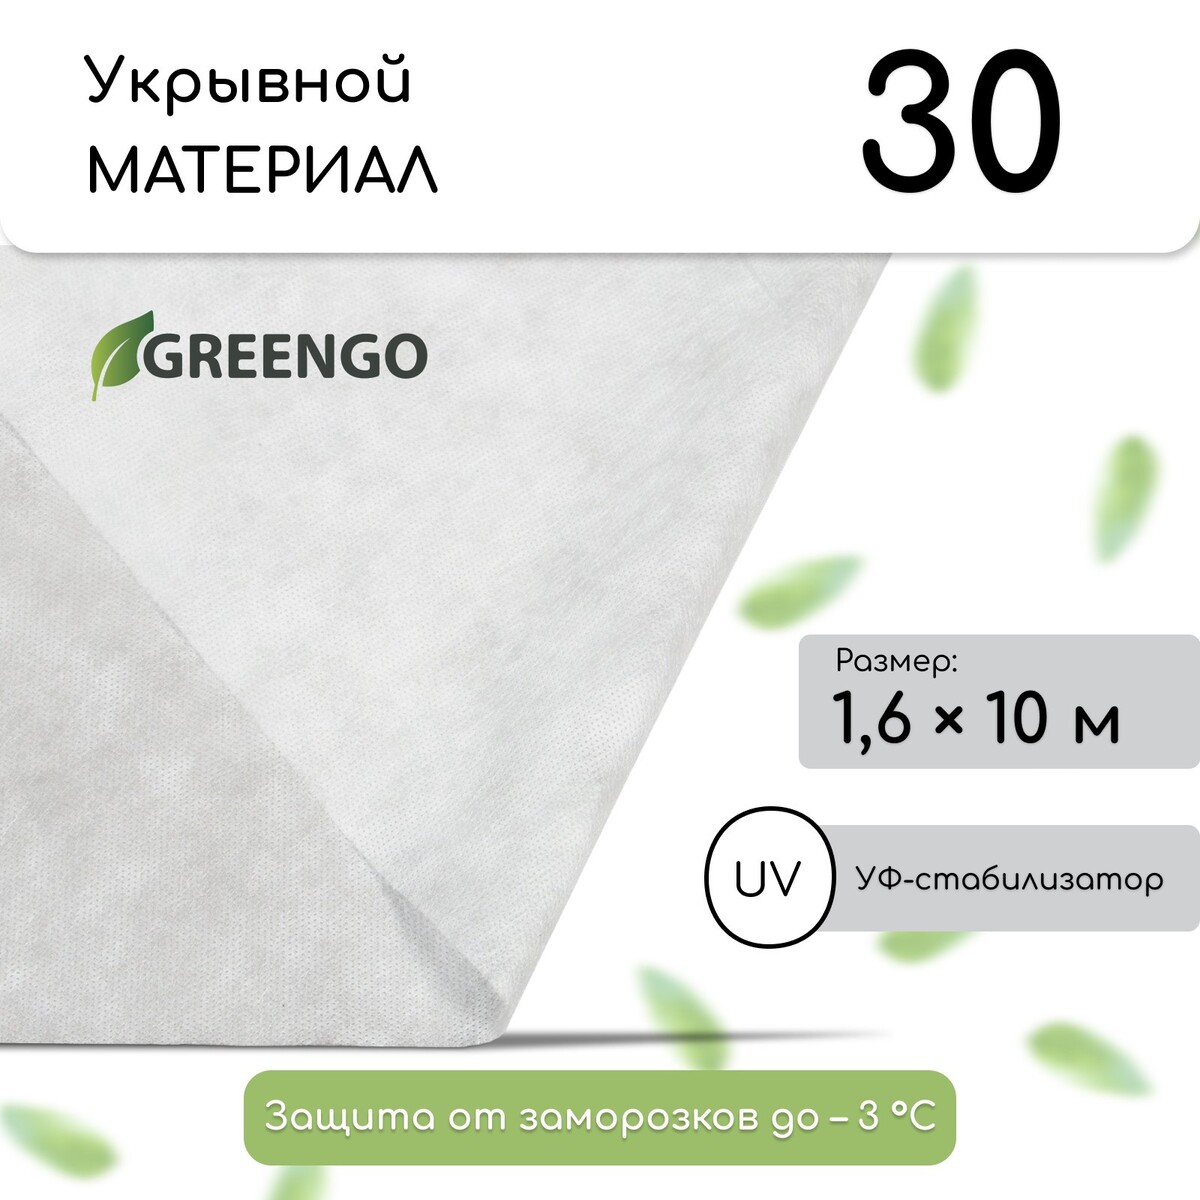 Материал укрывной, 10 × 1.6 м, плотность 30 г/м², спанбонд с уф-стабилизатором, белый, greengo, эконом 20%